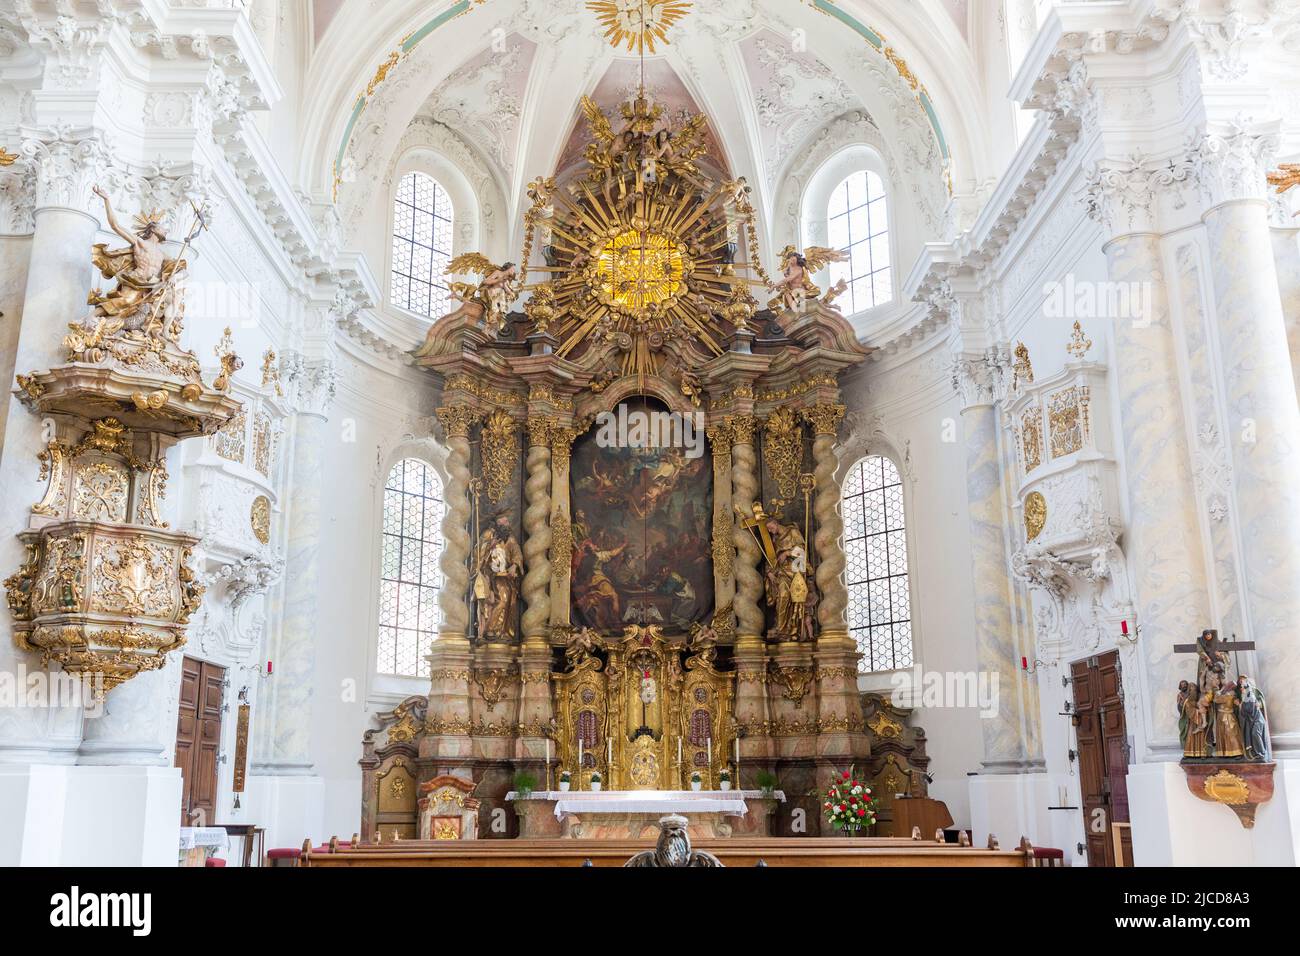 Landshut, Alemania - 15 de agosto de 2021: Vista sobre el altar del Abteikirche (iglesia abacial) Seligenthal. Arquitectura de estilo rococó. Foto de stock